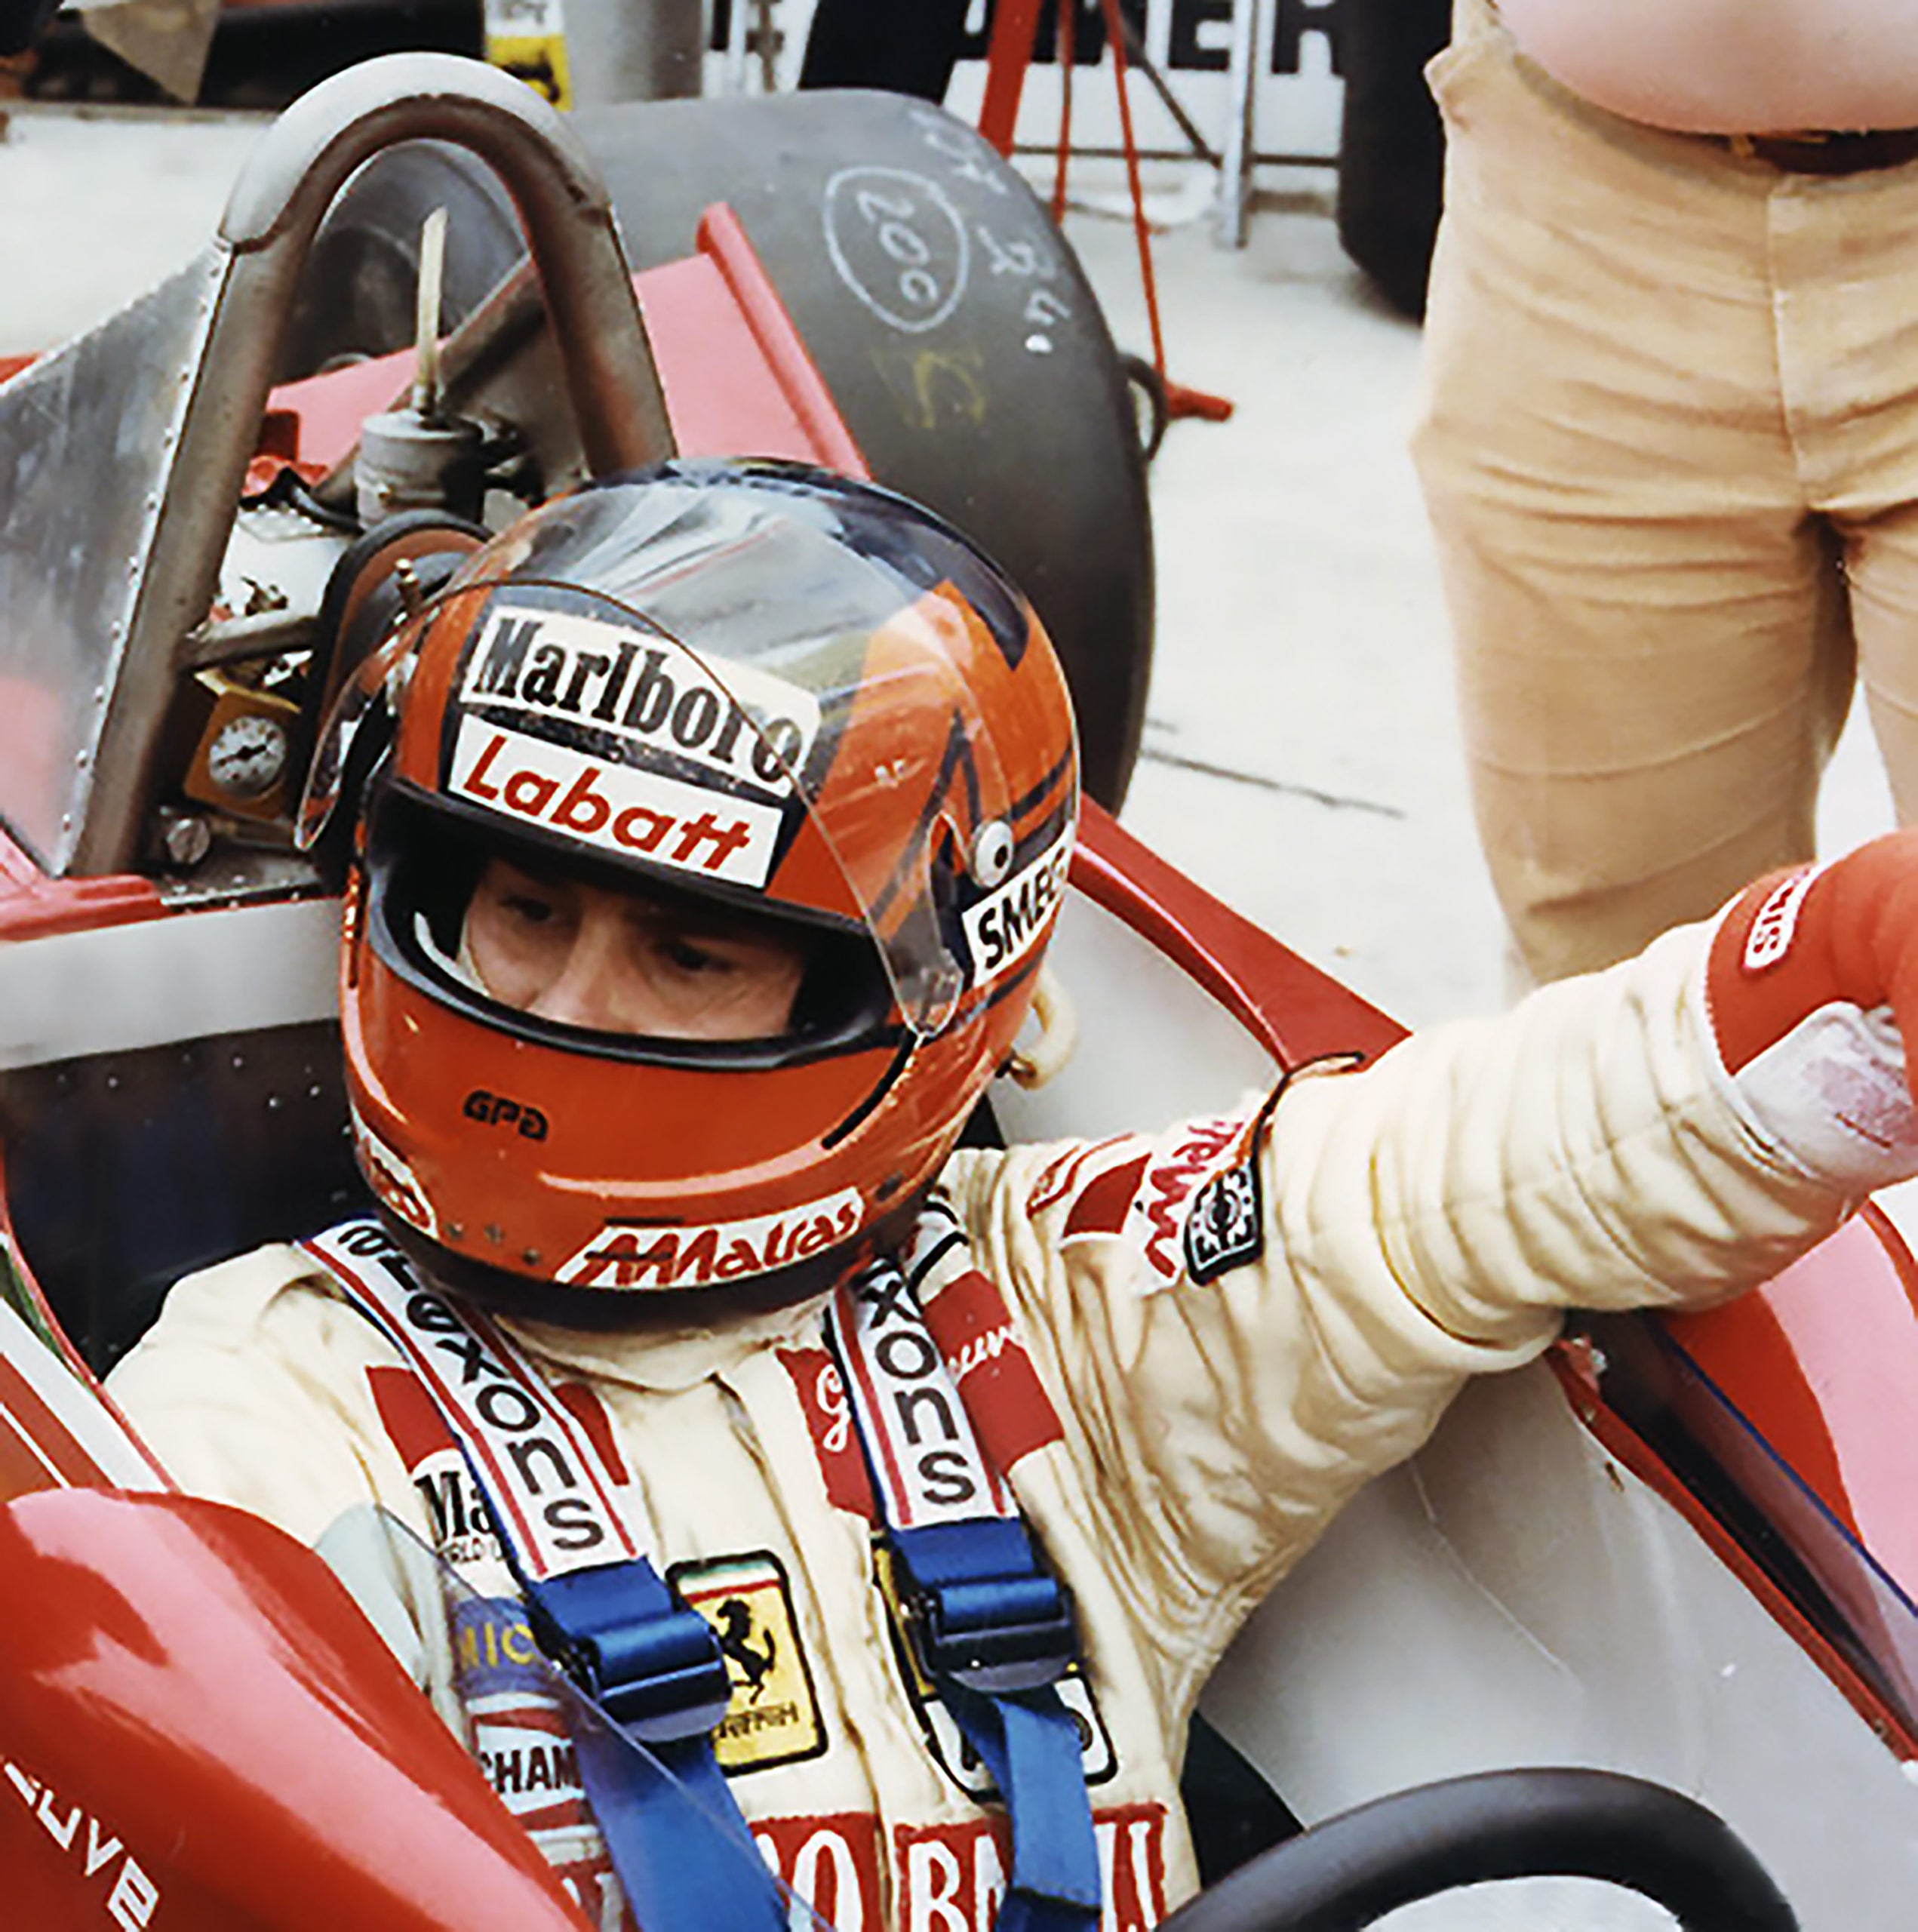 1979 Gilles Villeneuve Signed  Ferrari F1 Rare Vintage Poster